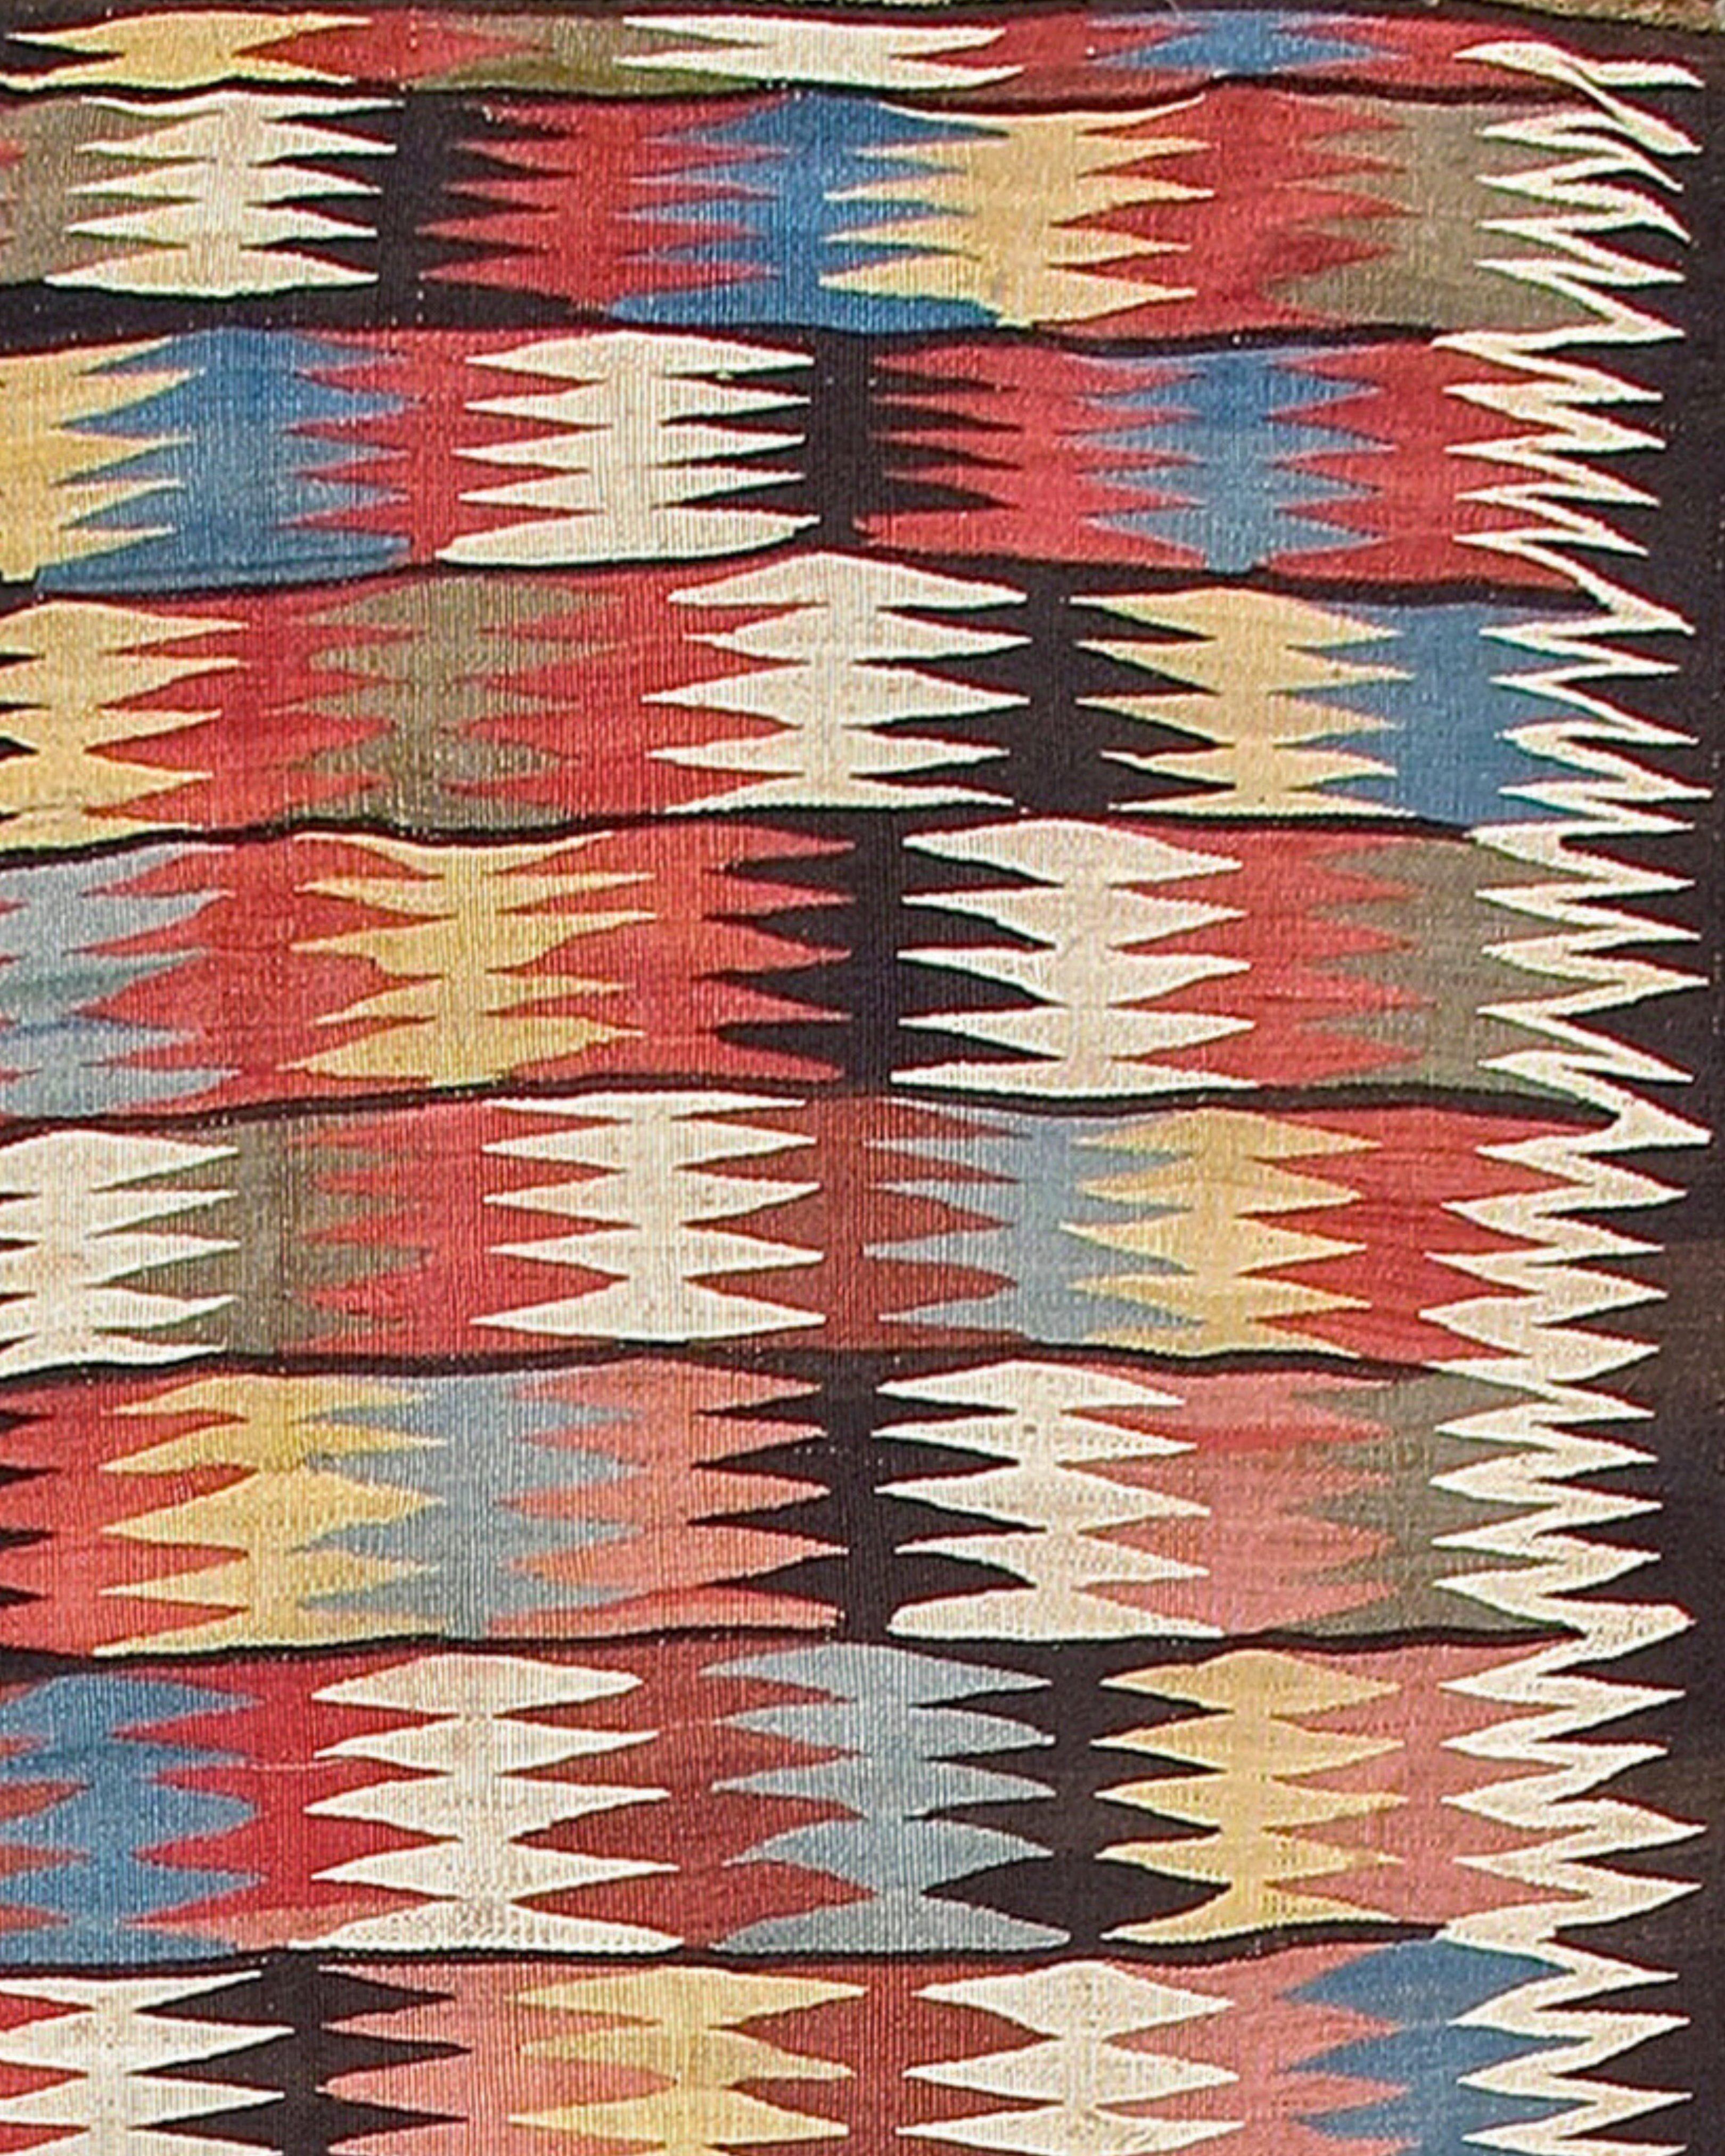 Tapis Kilim persan ancien Veramin, vers 1900

Ce kilim présente une finition en macramé à une extrémité et des chaînes de chameau alternant avec des chaînes en nappes brunes et blanches à l'autre extrémité. Très bonne couleur.

Informations